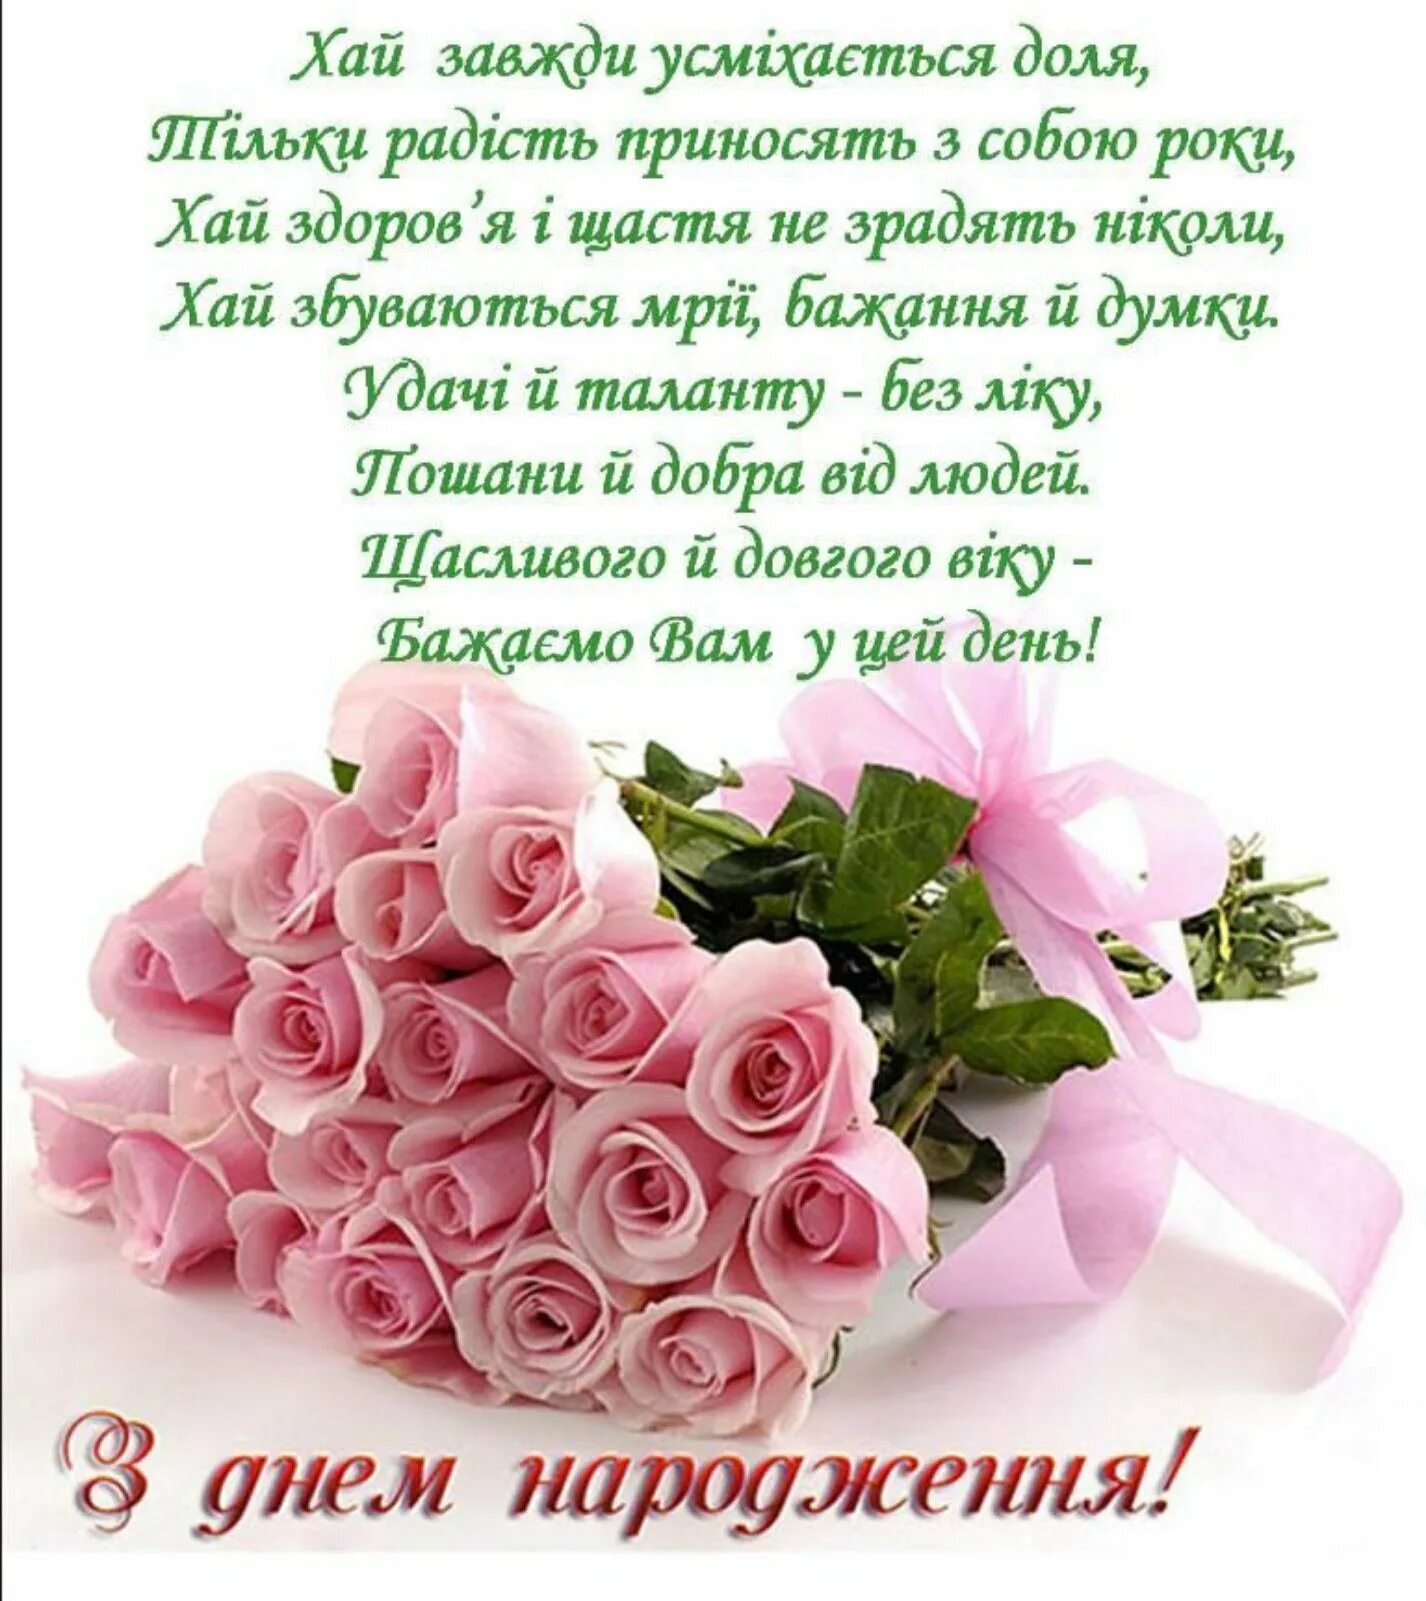 Поздравления на украинском языке. З днем народження. Поздравления с днём рождения на украинском языке. З днем народженняжінці. Поздравления с днём рождения женщине красивые на украинском языке.